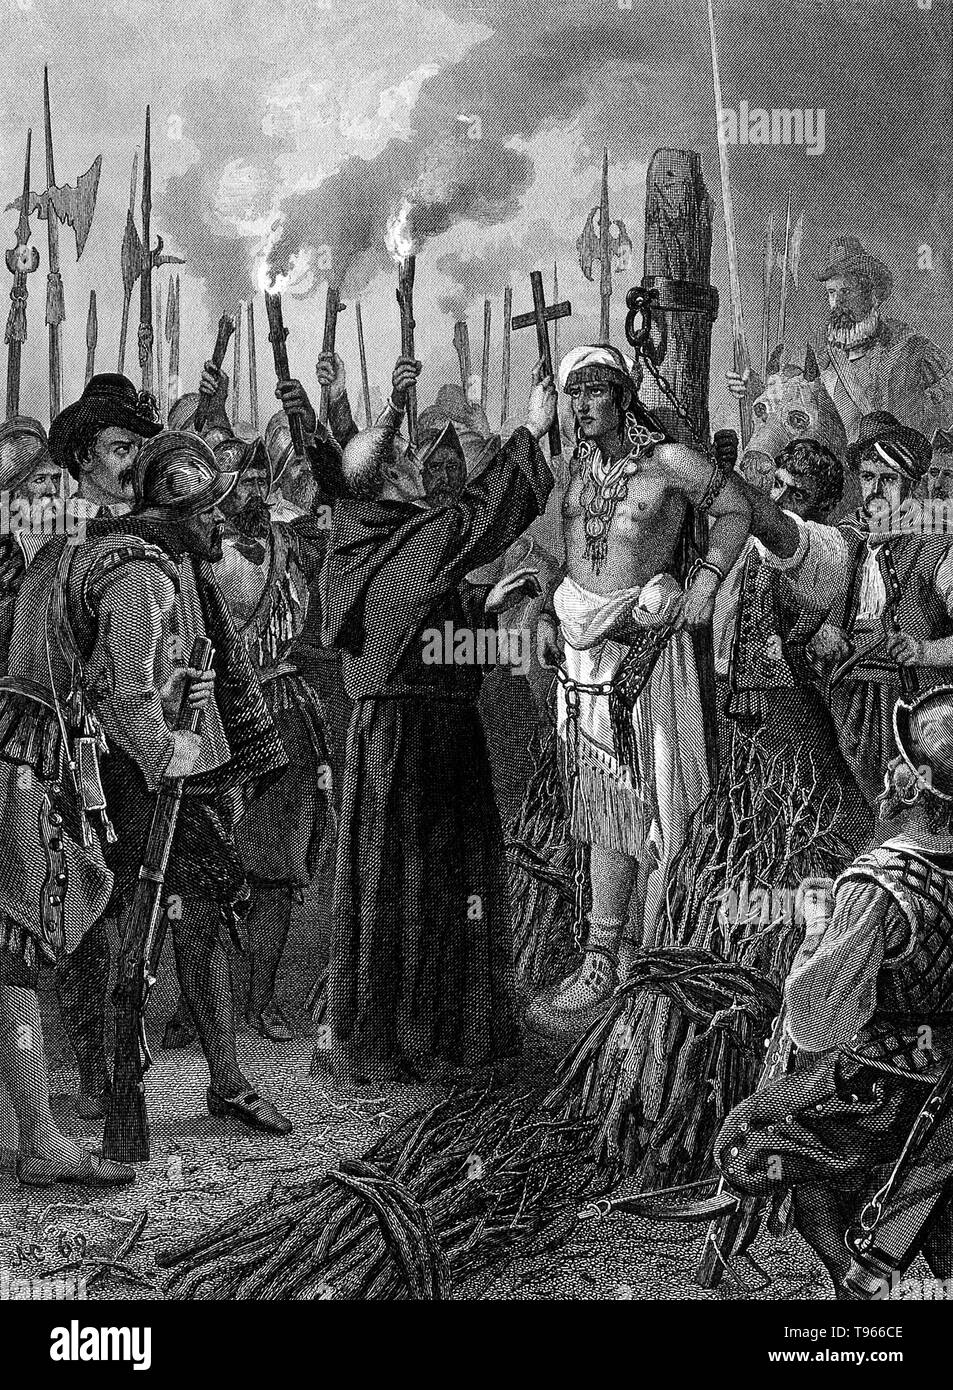 Gravure illustrant l'exécution d'Atahualpa Atahualpa (1497-1533) fut le dernier empereur souverain de l'Empire Inca, l'avant la conquête espagnole du Pérou. Au cours de la conquête espagnole de l'Empire Inca, l'espagnol Francisco Pizarro capturé Atahualpa et l'a utilisé pour contrôler l'empire Inca. Plus nombreux que l'espagnol a vu que Atahualpa trop d'une responsabilité et a décidé de l'exécuter. Banque D'Images